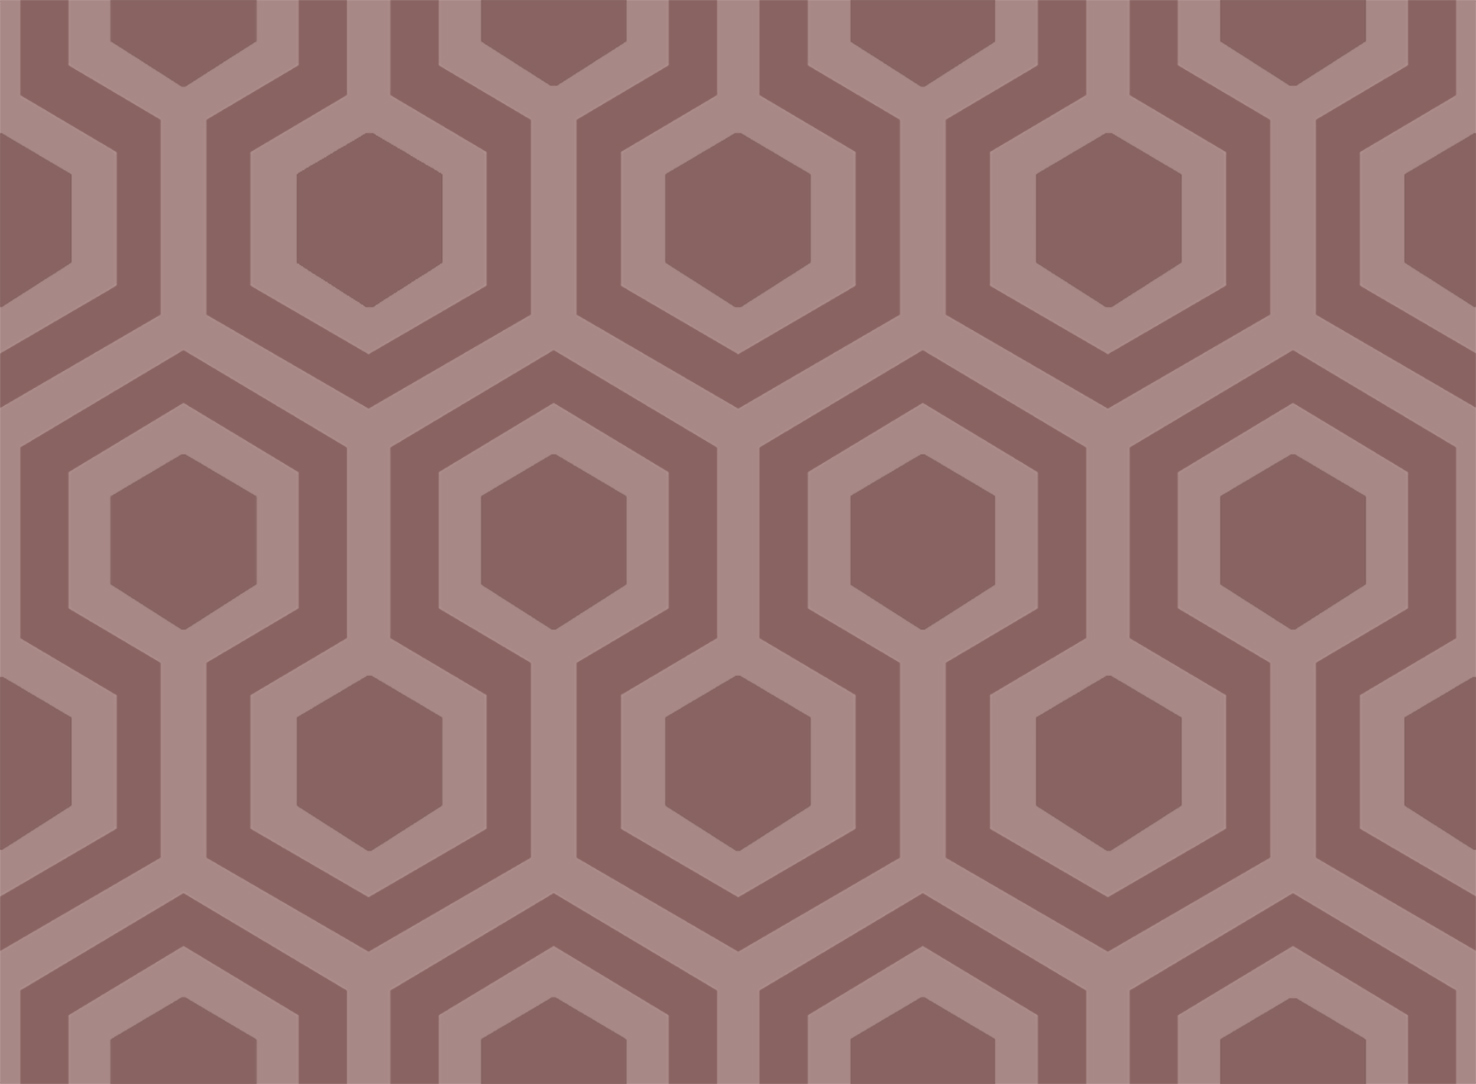 Hexagons_03